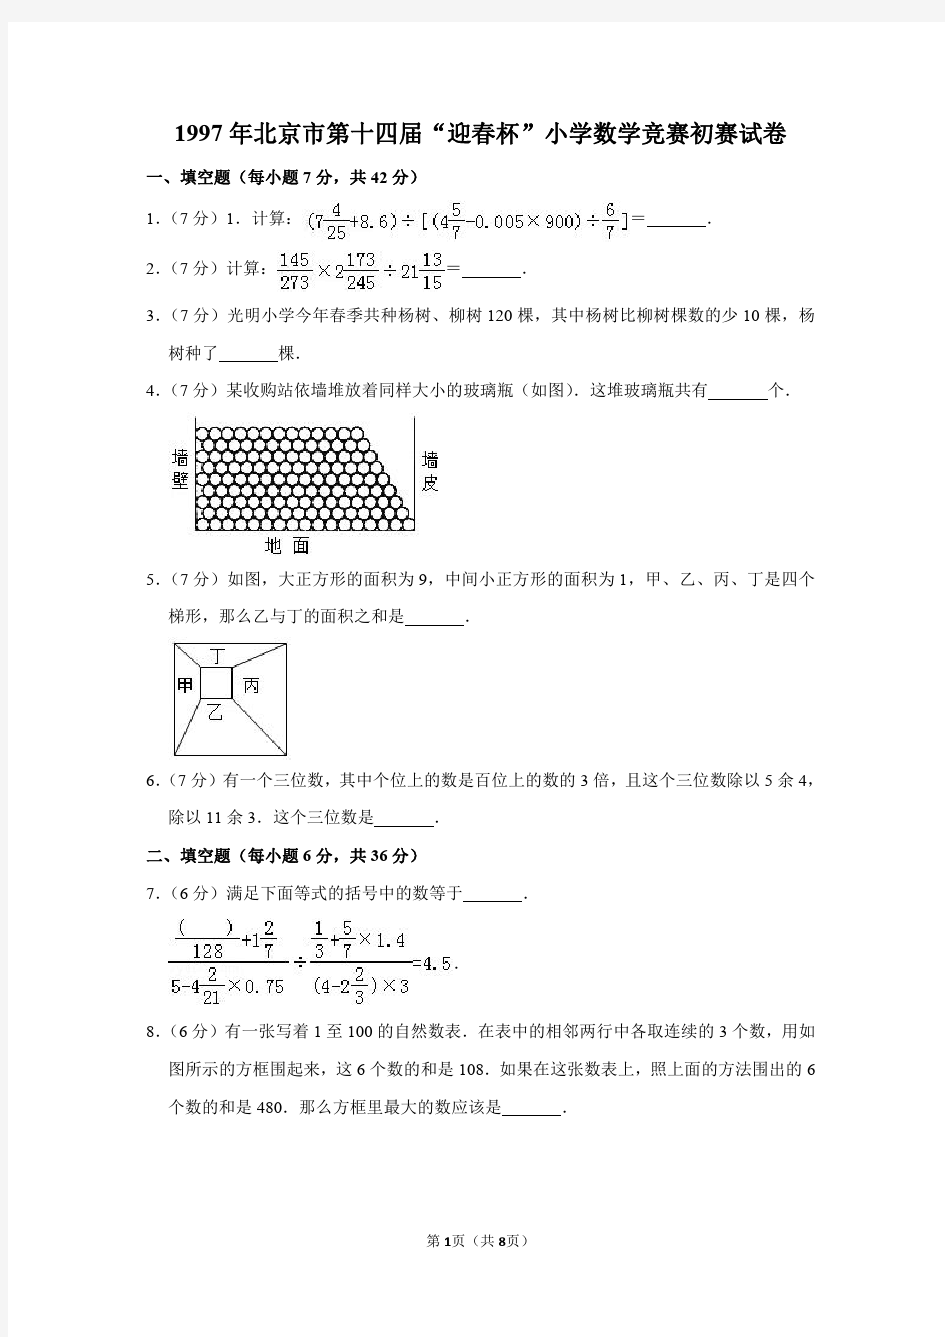 2020年北京市第十四届“春笋杯”小学数学竞赛初赛试卷